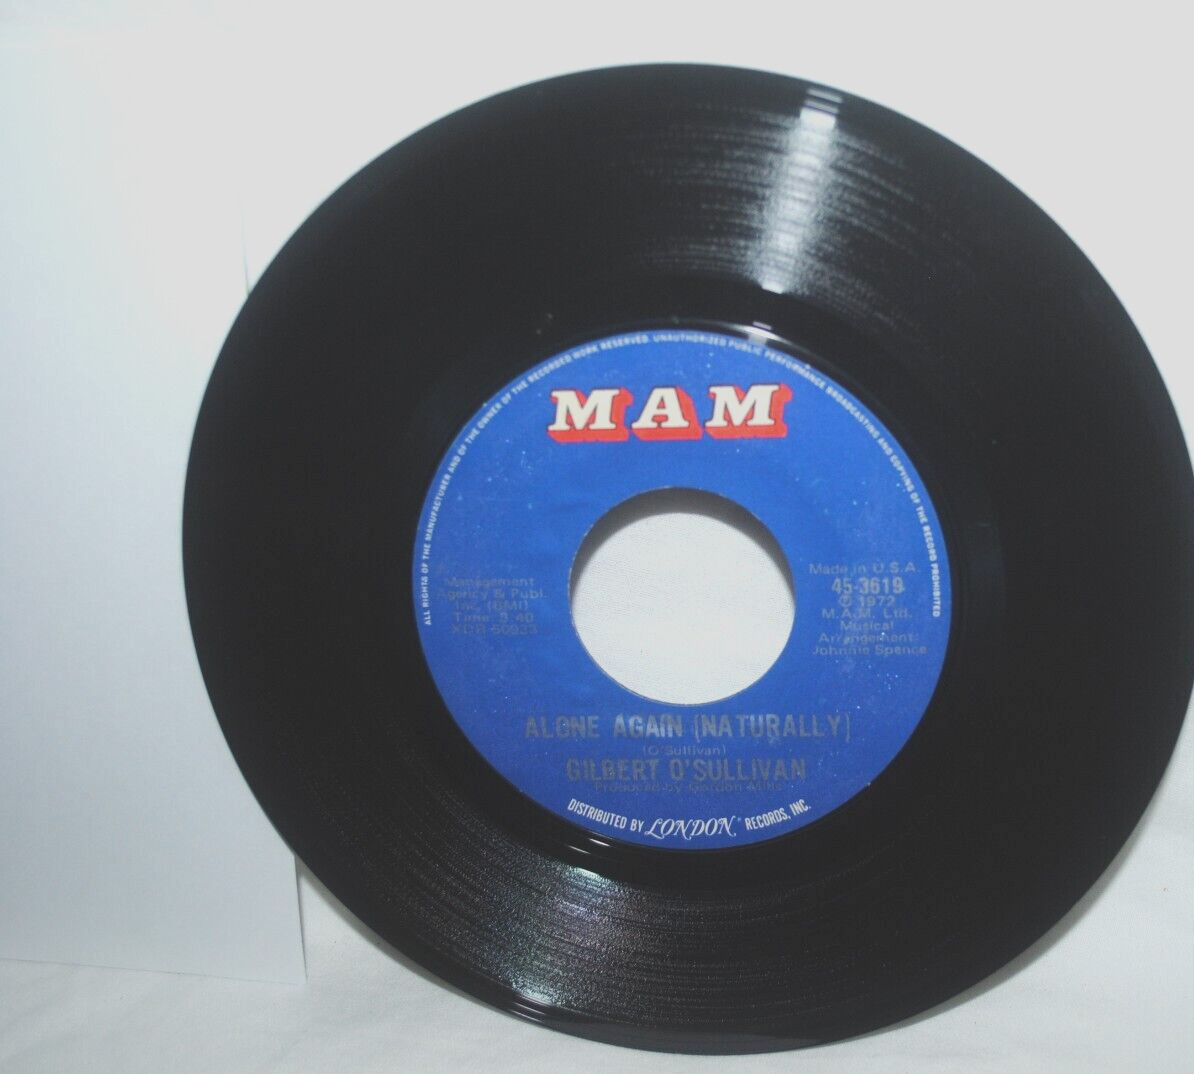 Gilbert O\'Sullivan, ALONE AGAIN (NATURALLY), 45 rpm record, EX, MAM 45-3619